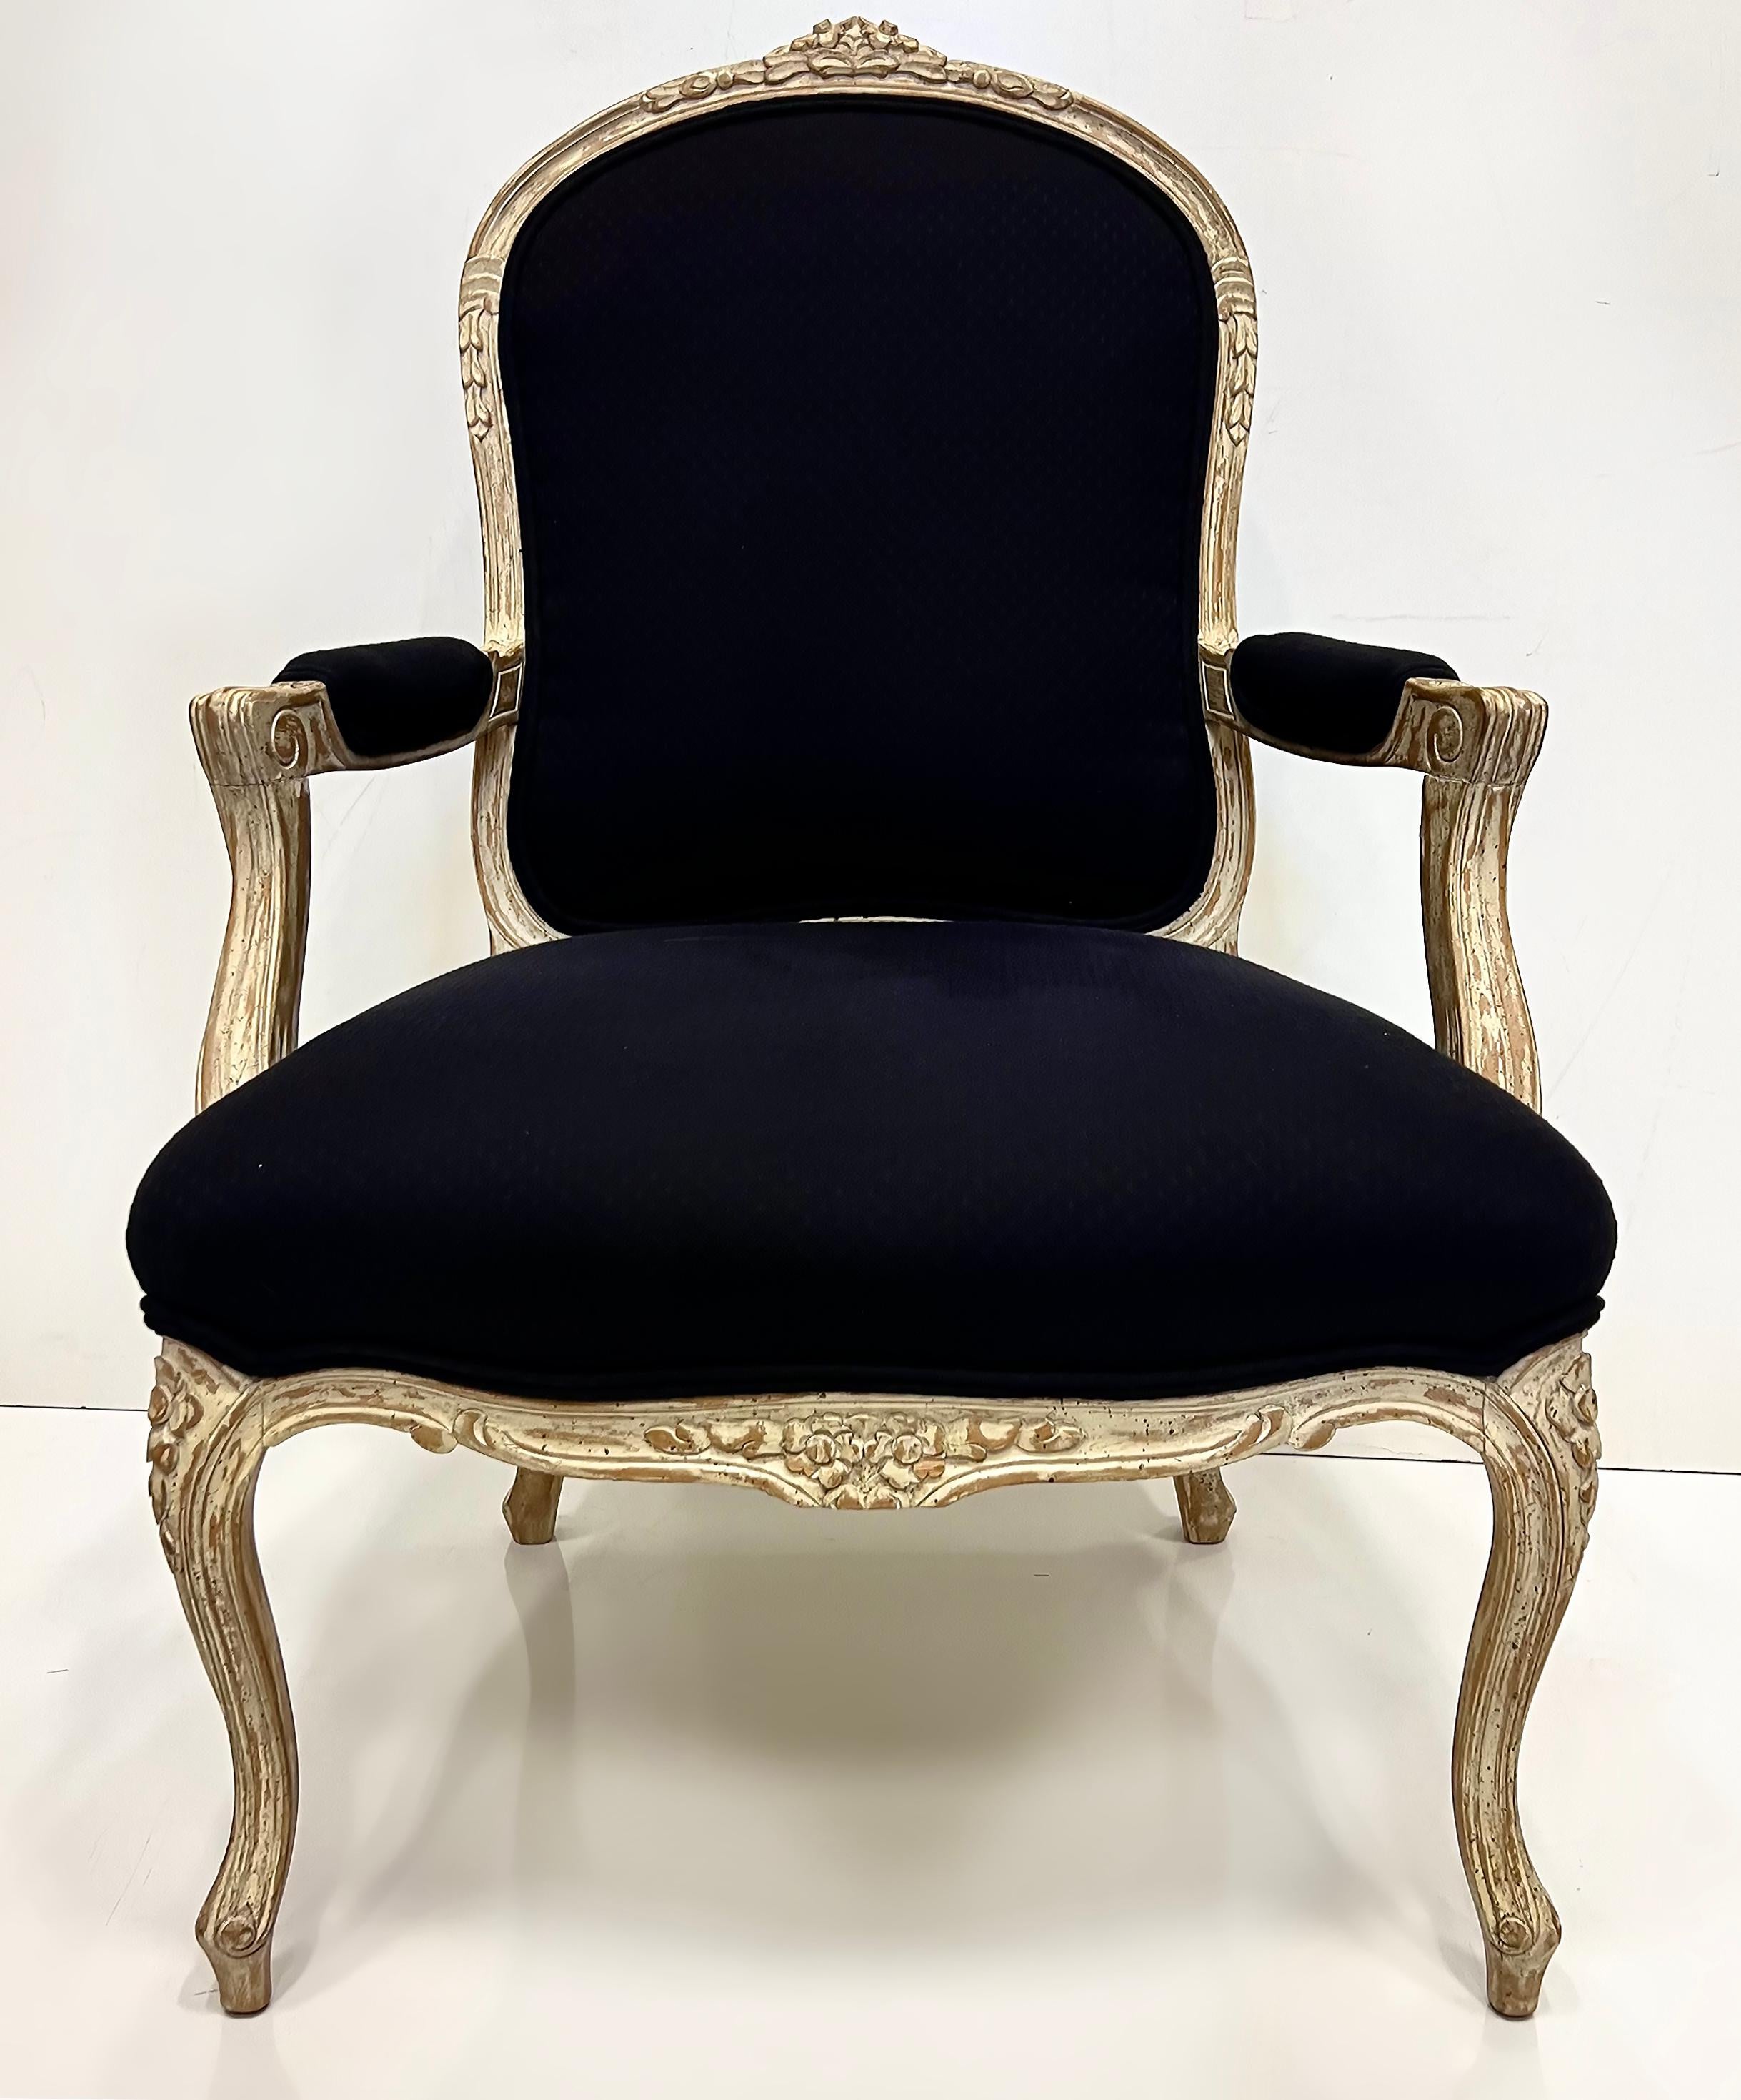 Substantielle Paire de Chaises Fauteuil Vintage Style Louis XV, Grande échelle

Nous proposons à la vente une paire de fauteuils ouverts de style Louis XV du XXe siècle.  Les chaises sont bien faites et ont une grande envergure. En outre, ils sont